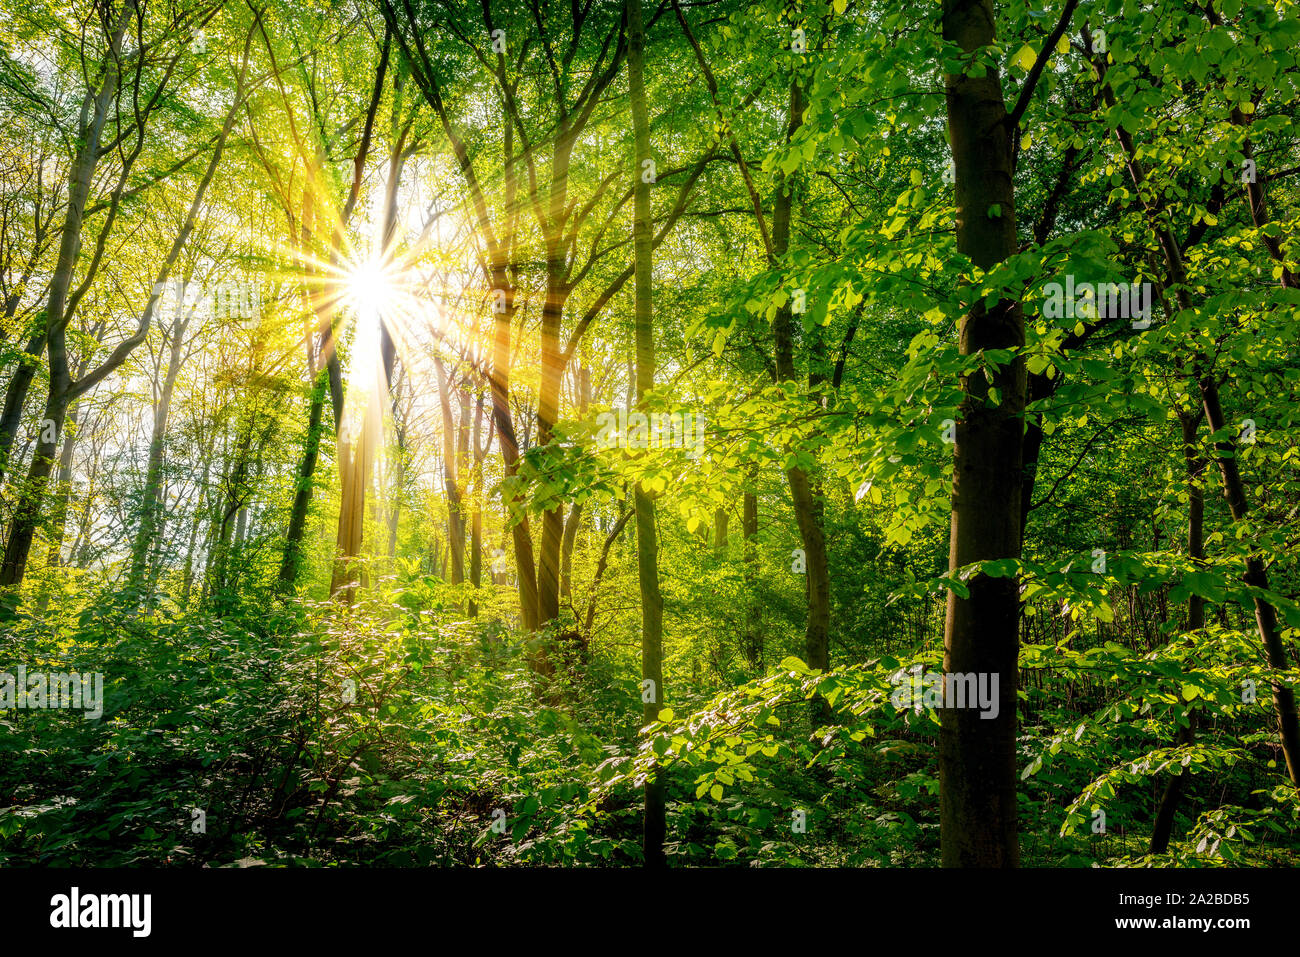 Wald im Frühling mit grünen Bäumen und strahlender Sonne Stock Photo